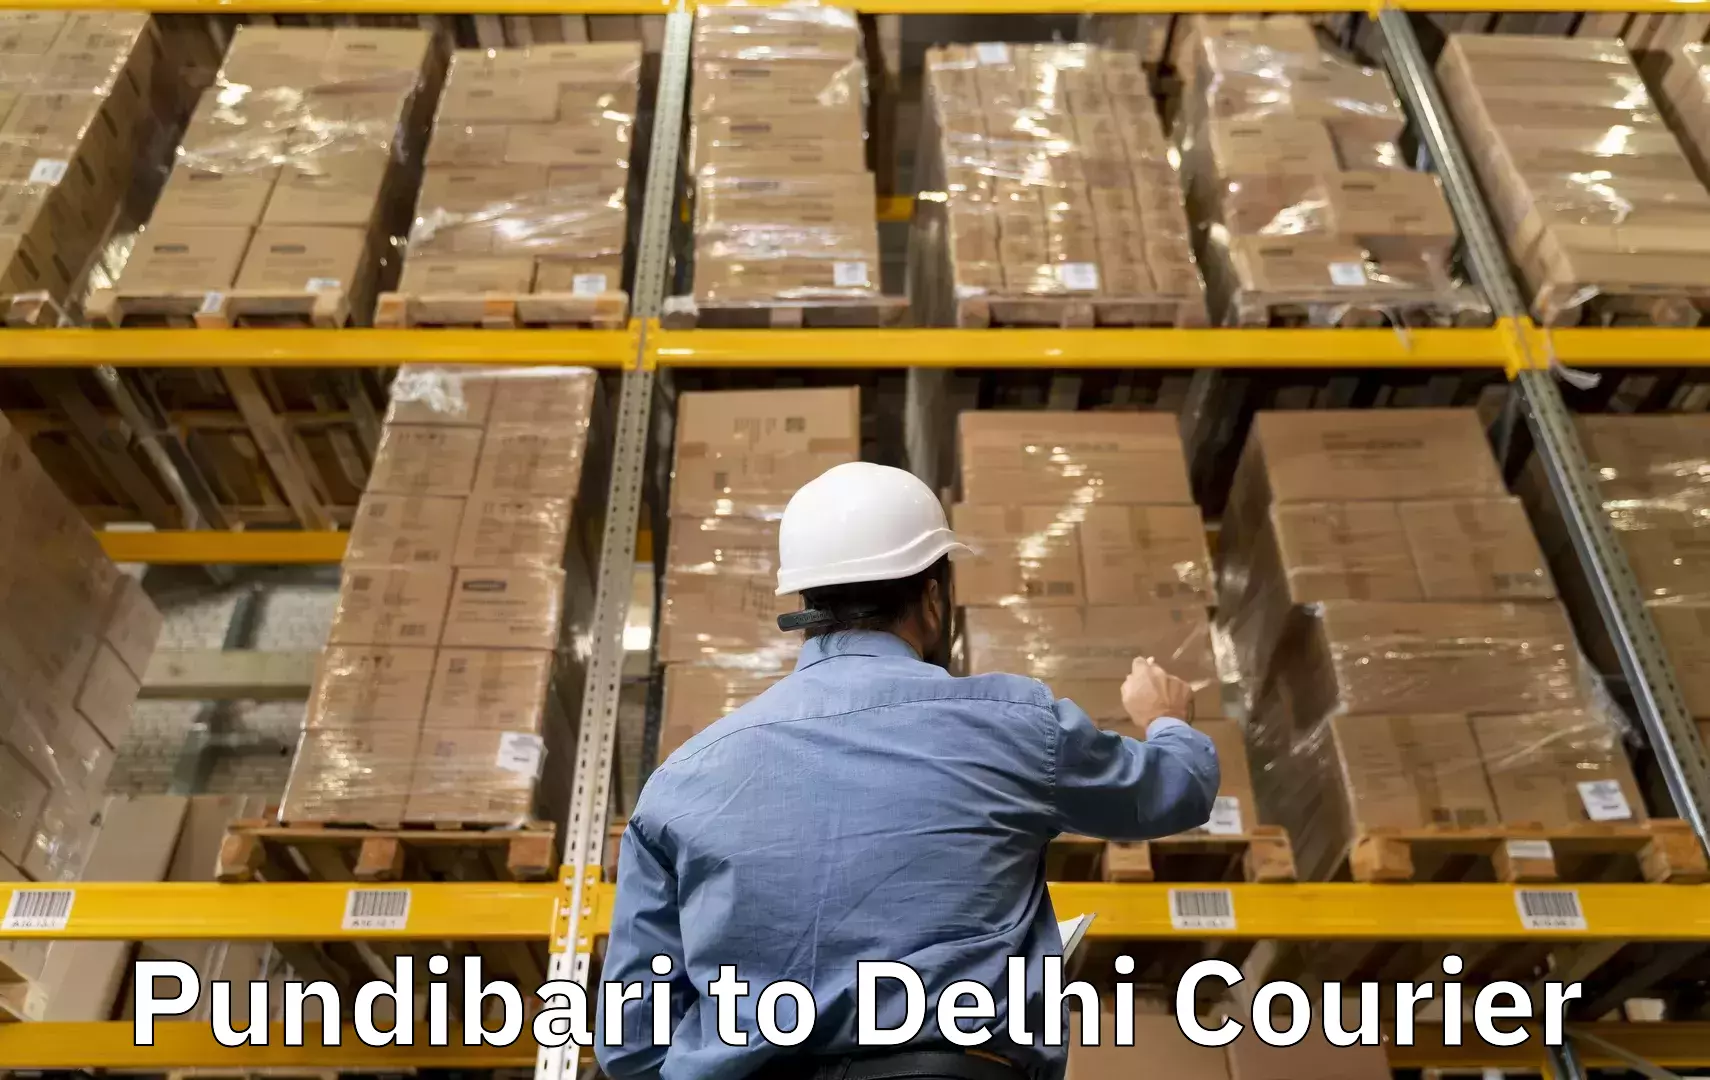 Baggage shipping experience Pundibari to NIT Delhi